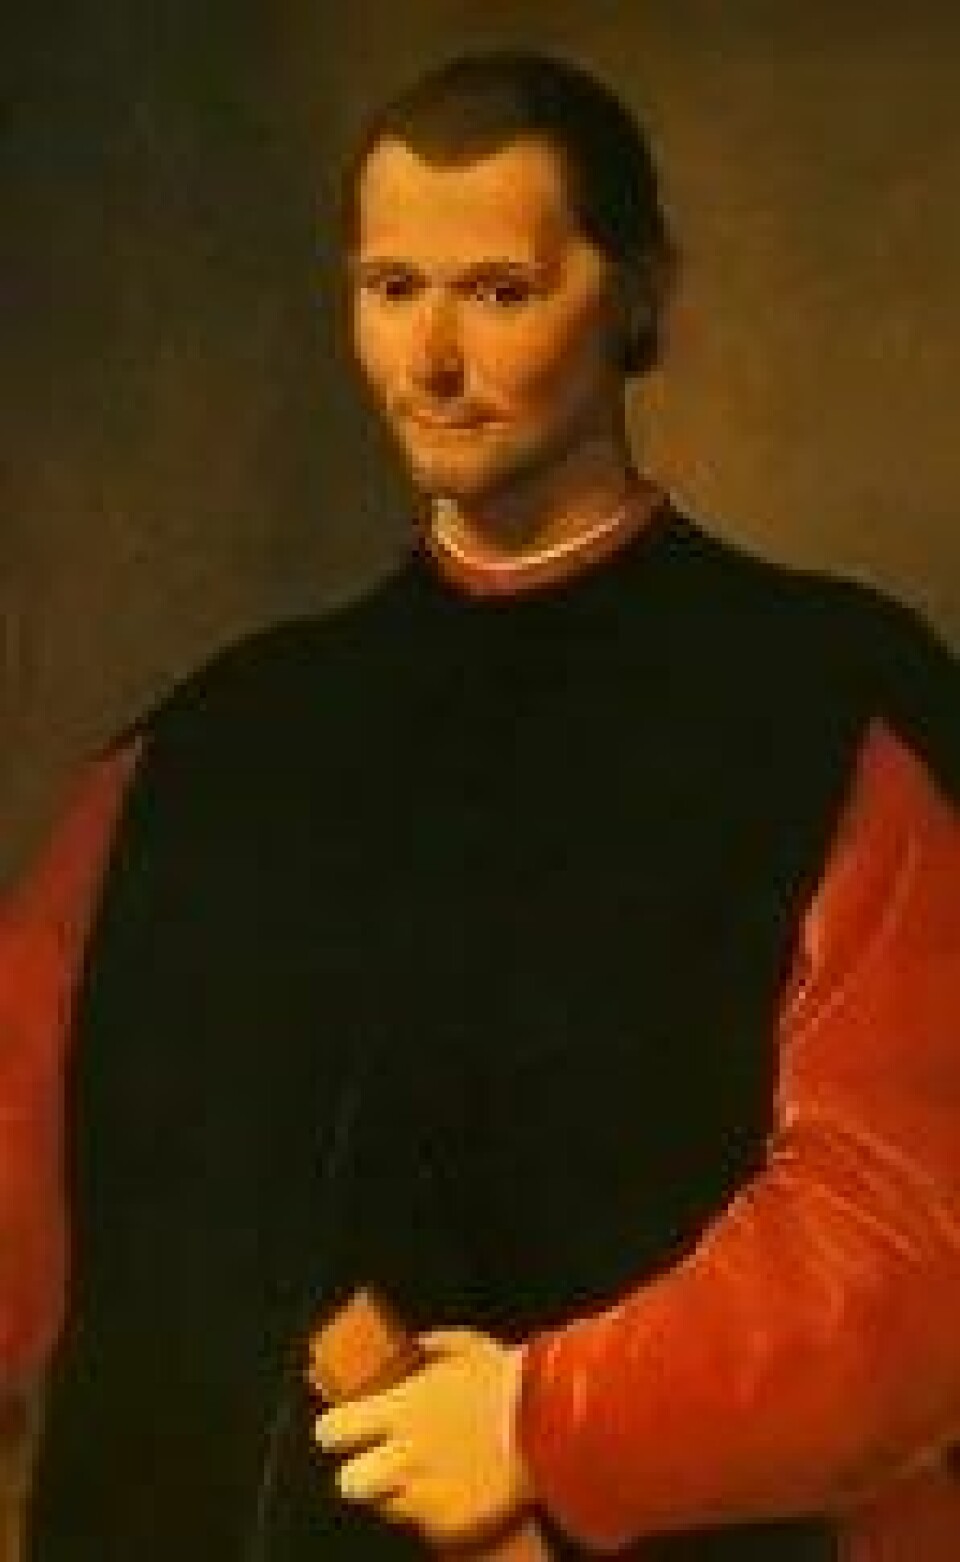 Santi di Titos portrett av Machiavelli. (Kilde: Wikimedia Commons)